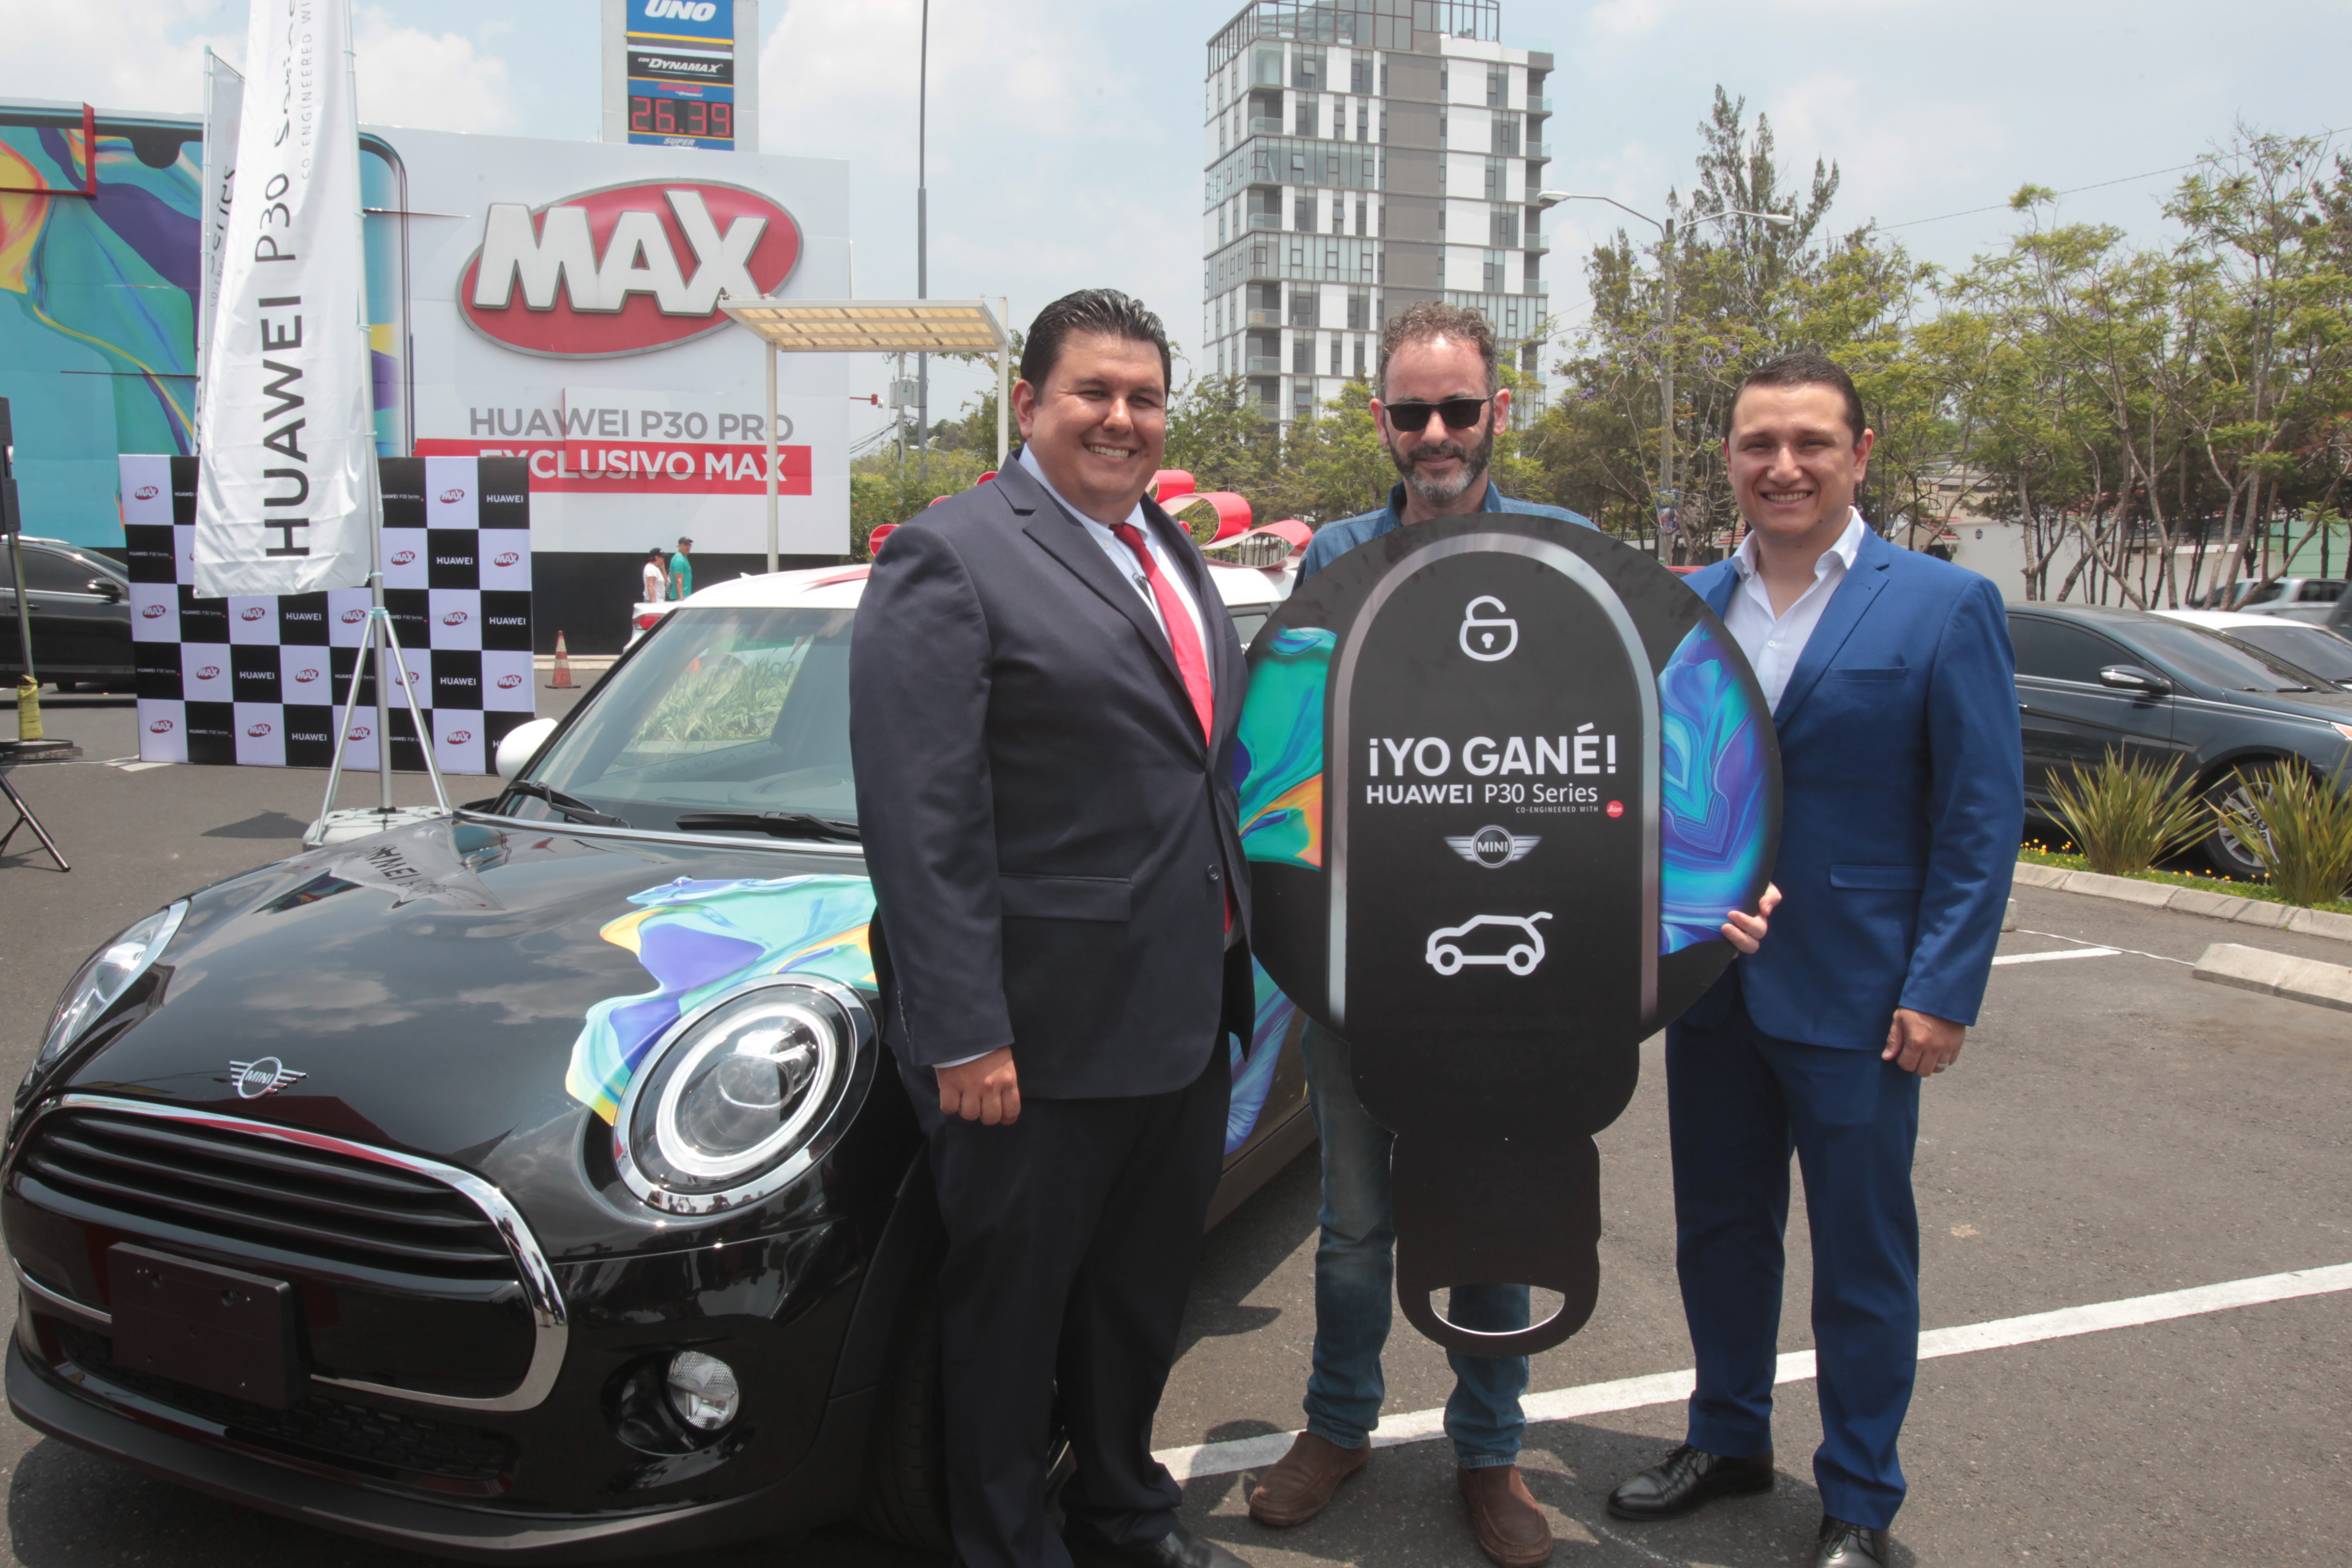 Representantes de Tiendas Max y Huawei junto a Badi Aranki, que ganó uno de los Mini Cooper de 3 puertas